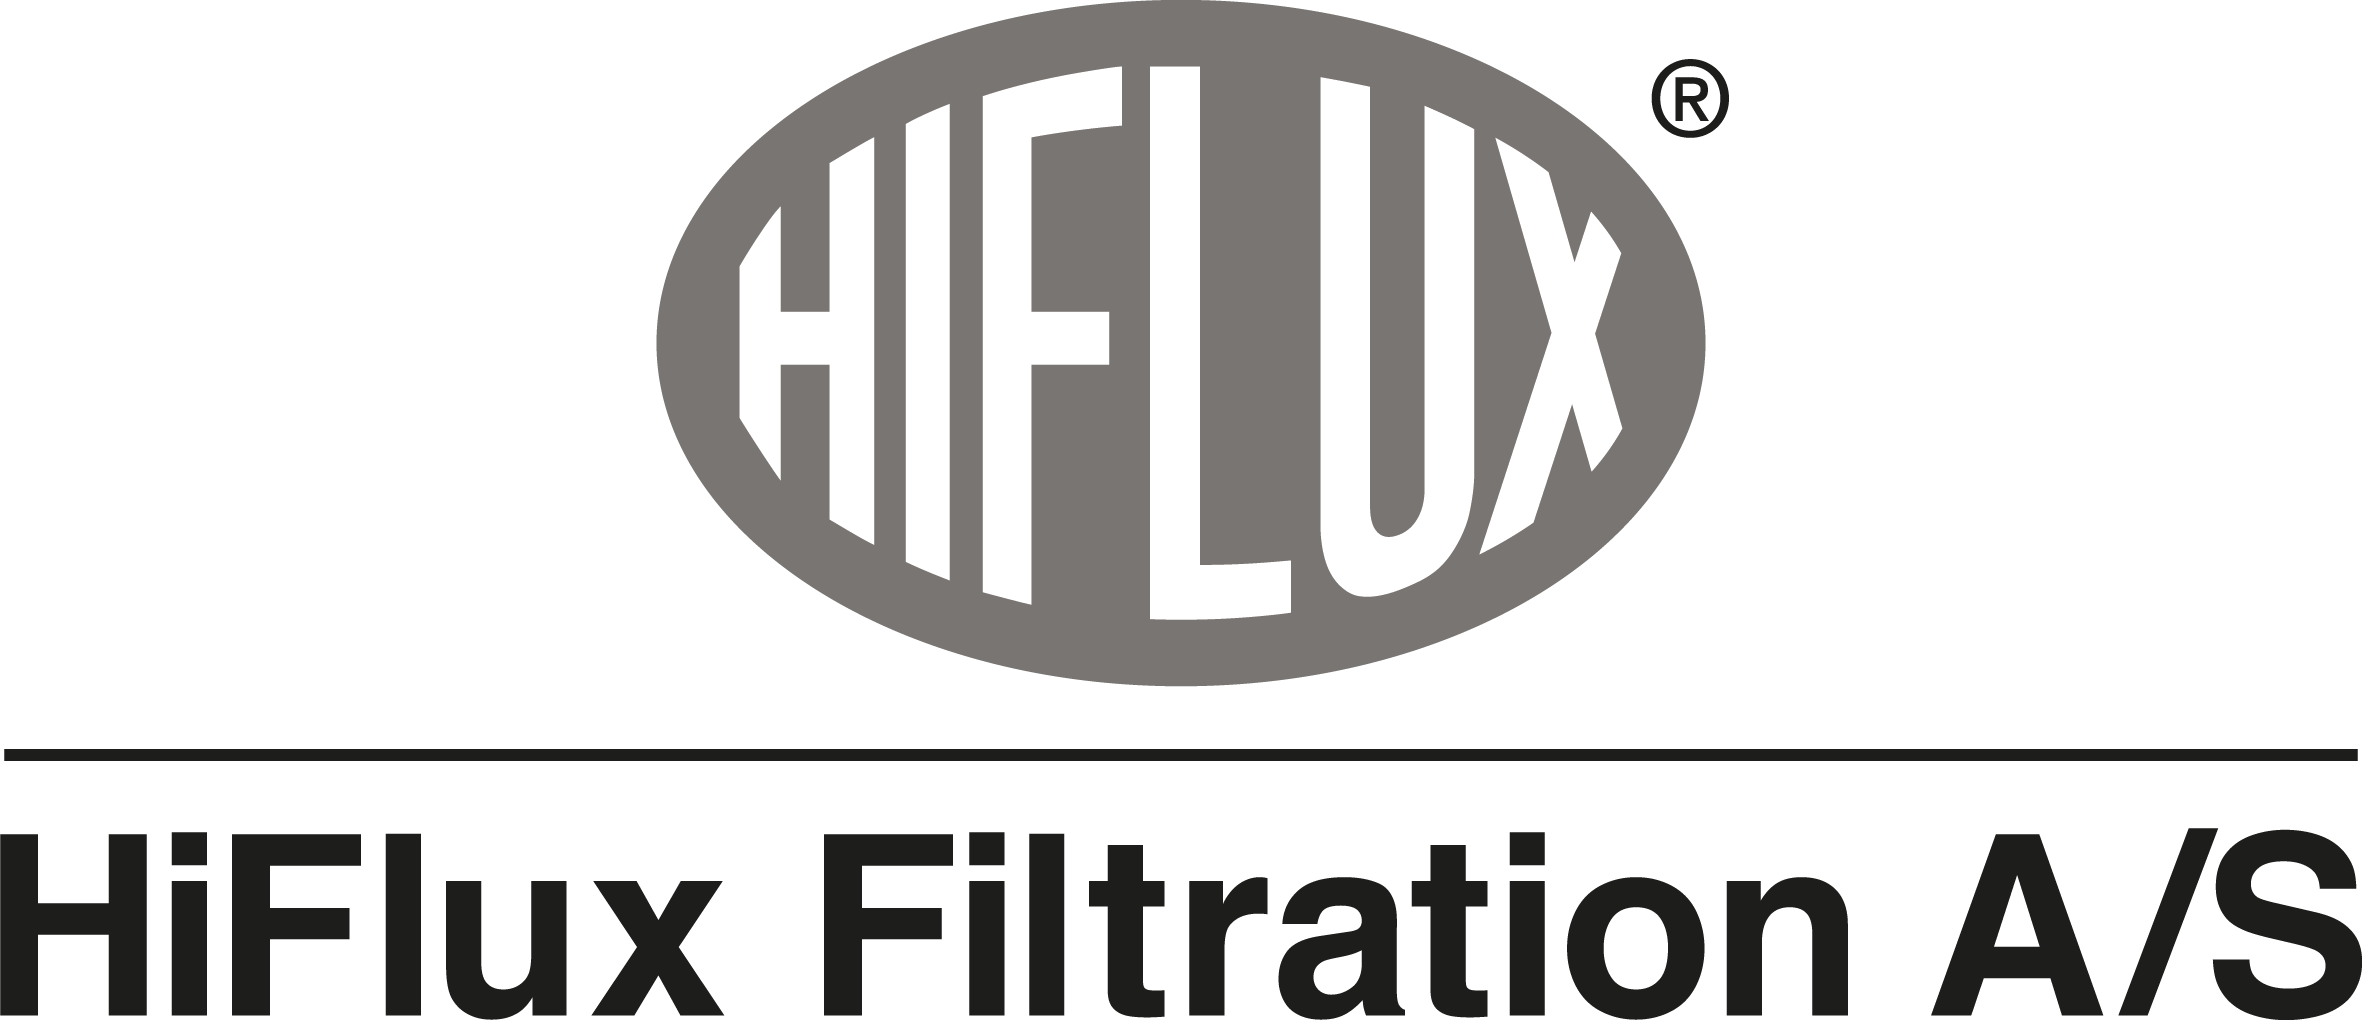 HiFlux_logo.png